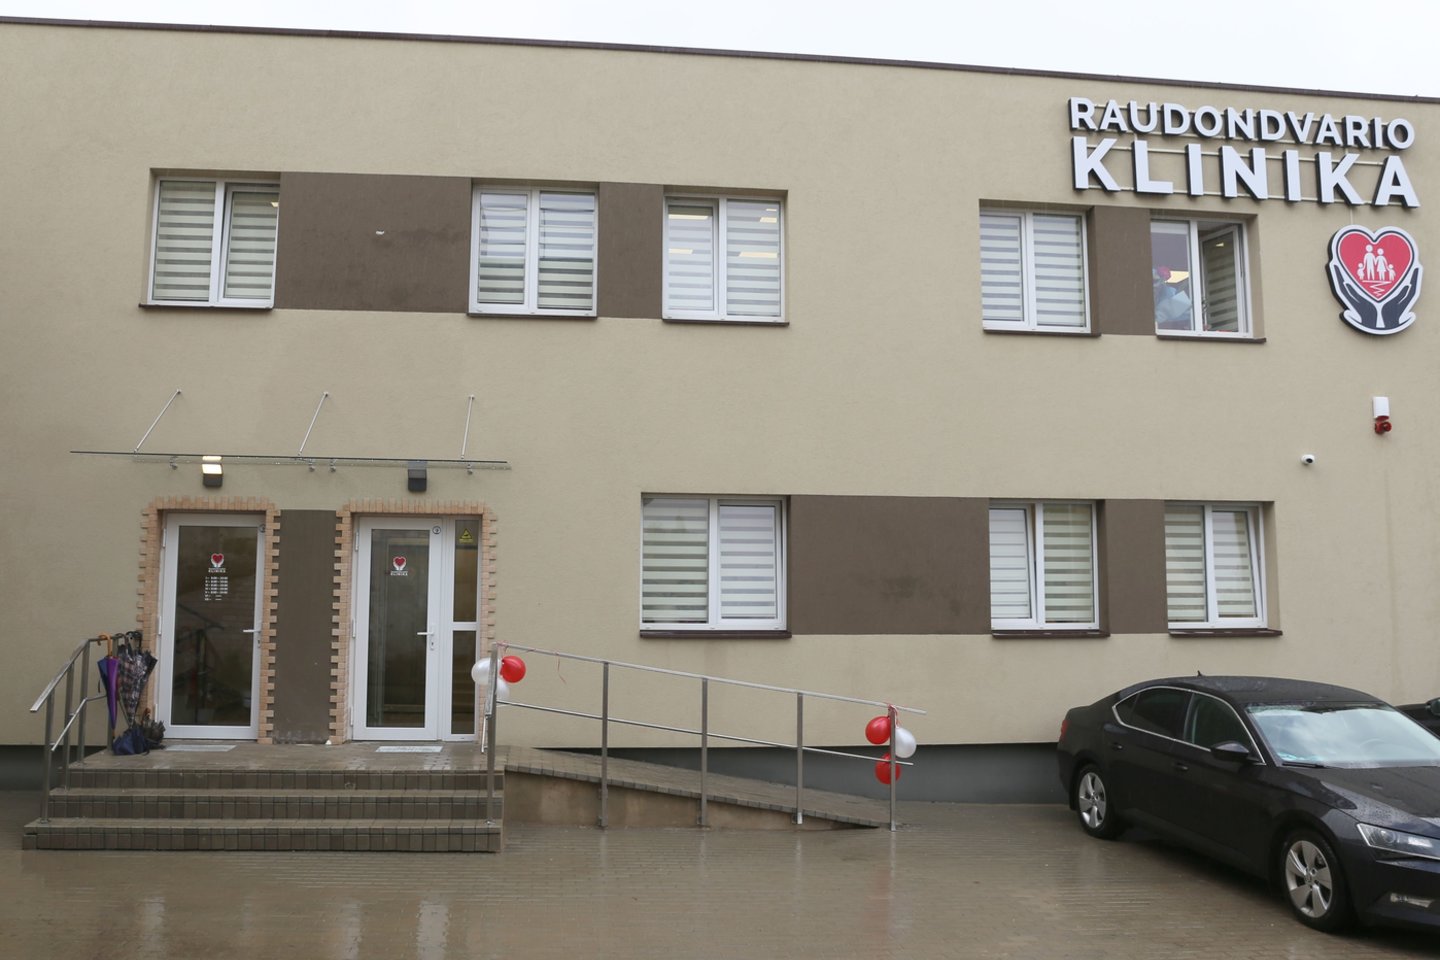 Raudondvaryje duris atvėrė medicinos klinika.<br> Kauno rajono savivaldybės nuotr.